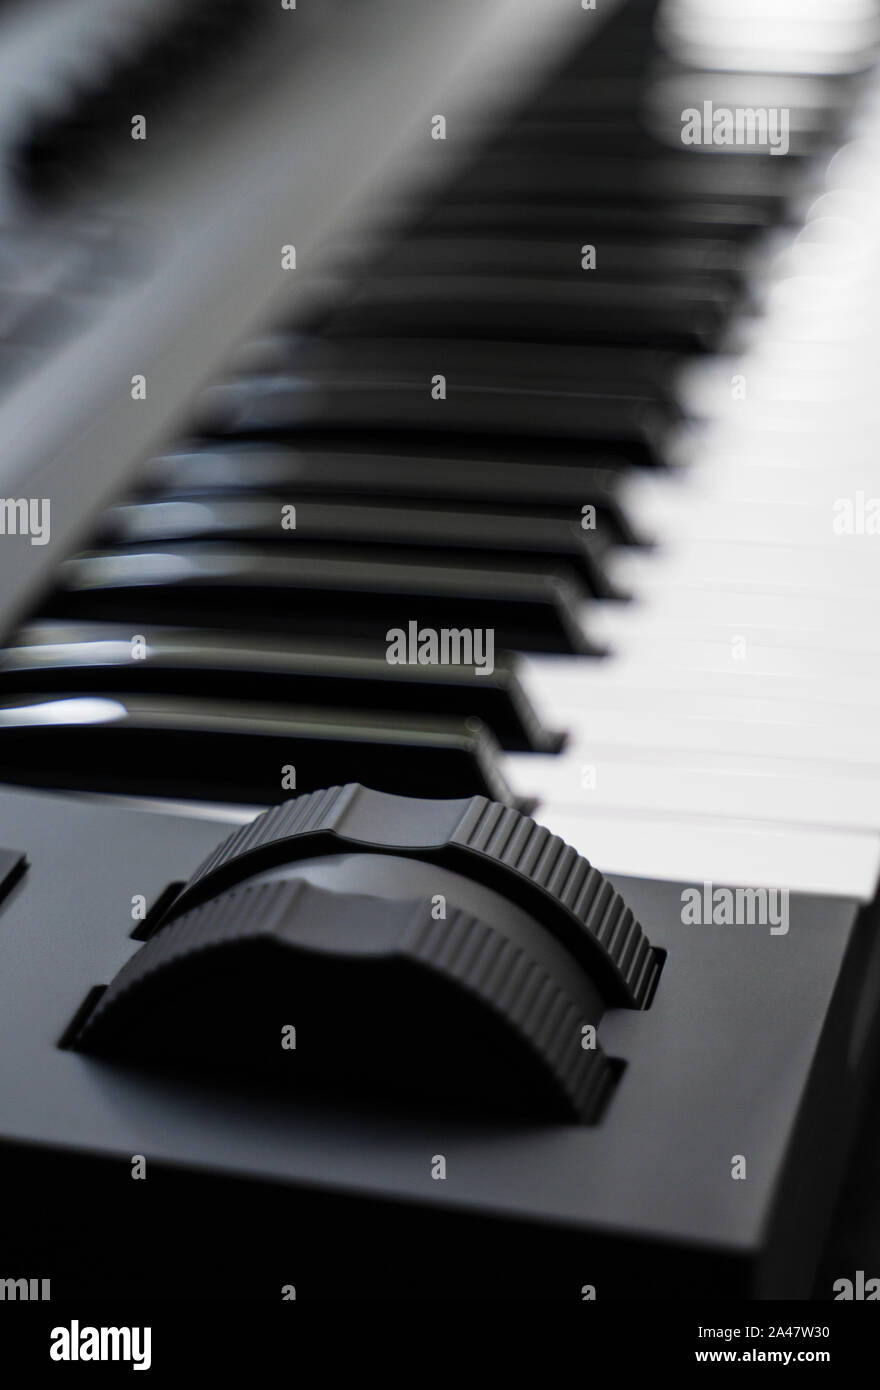 Professionelle MIDI-Keyboard Synthesizer mit Knöpfen und Reglern. Modulation und Pitch Wheels. Stockfoto